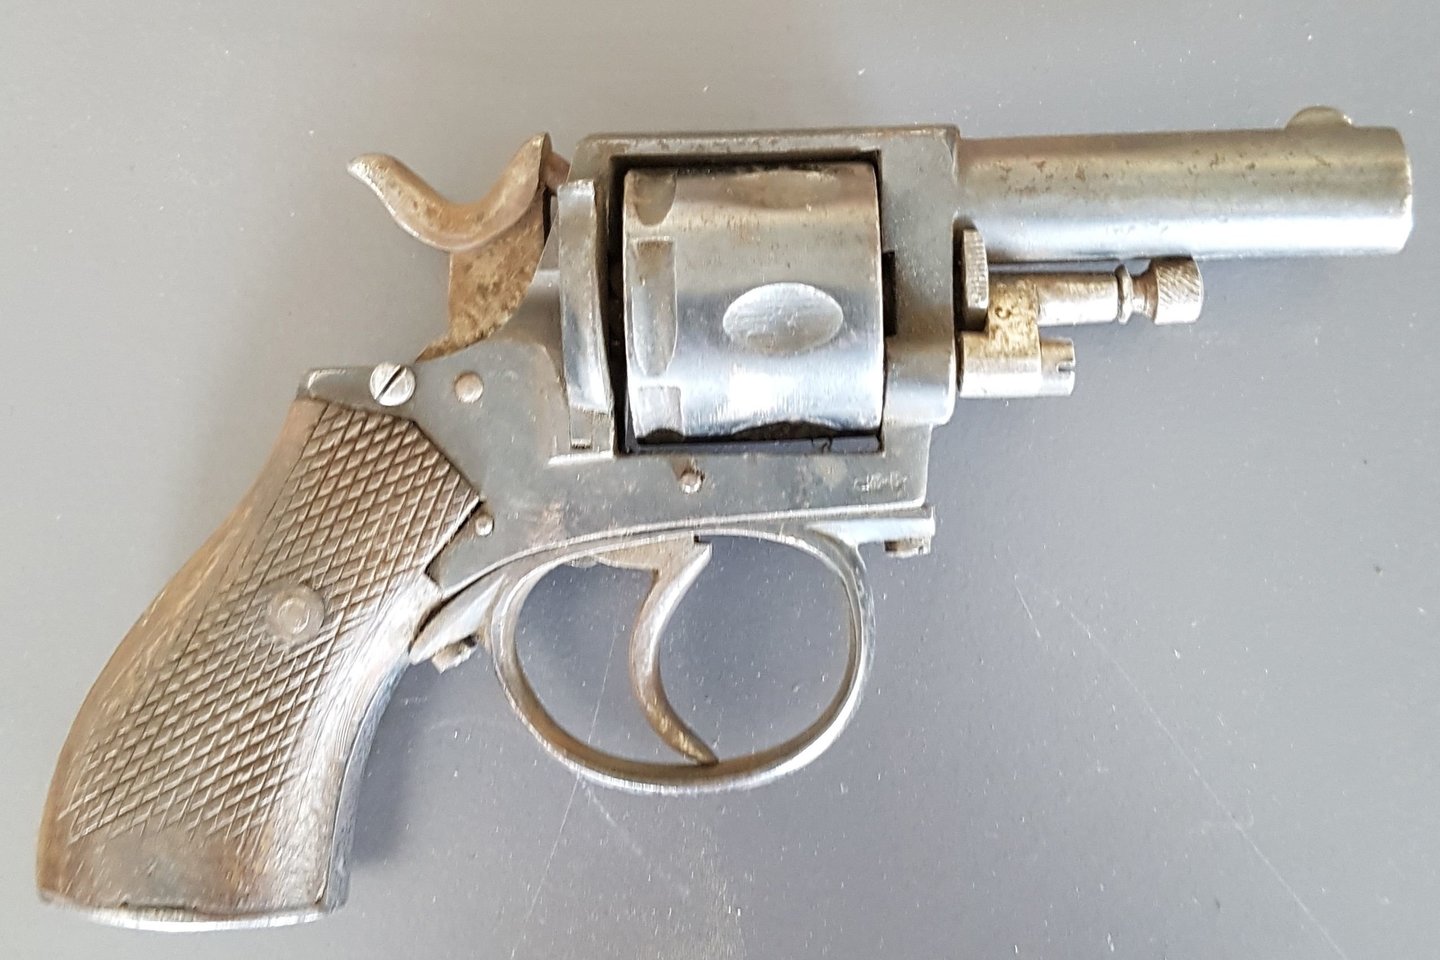  Tarp lobyje buvusių ginklų buvo rastas revolveris. Tai greičiausiai gatvių mūšių reliktas.<br> Stadtarchiv Hagen nuotr.